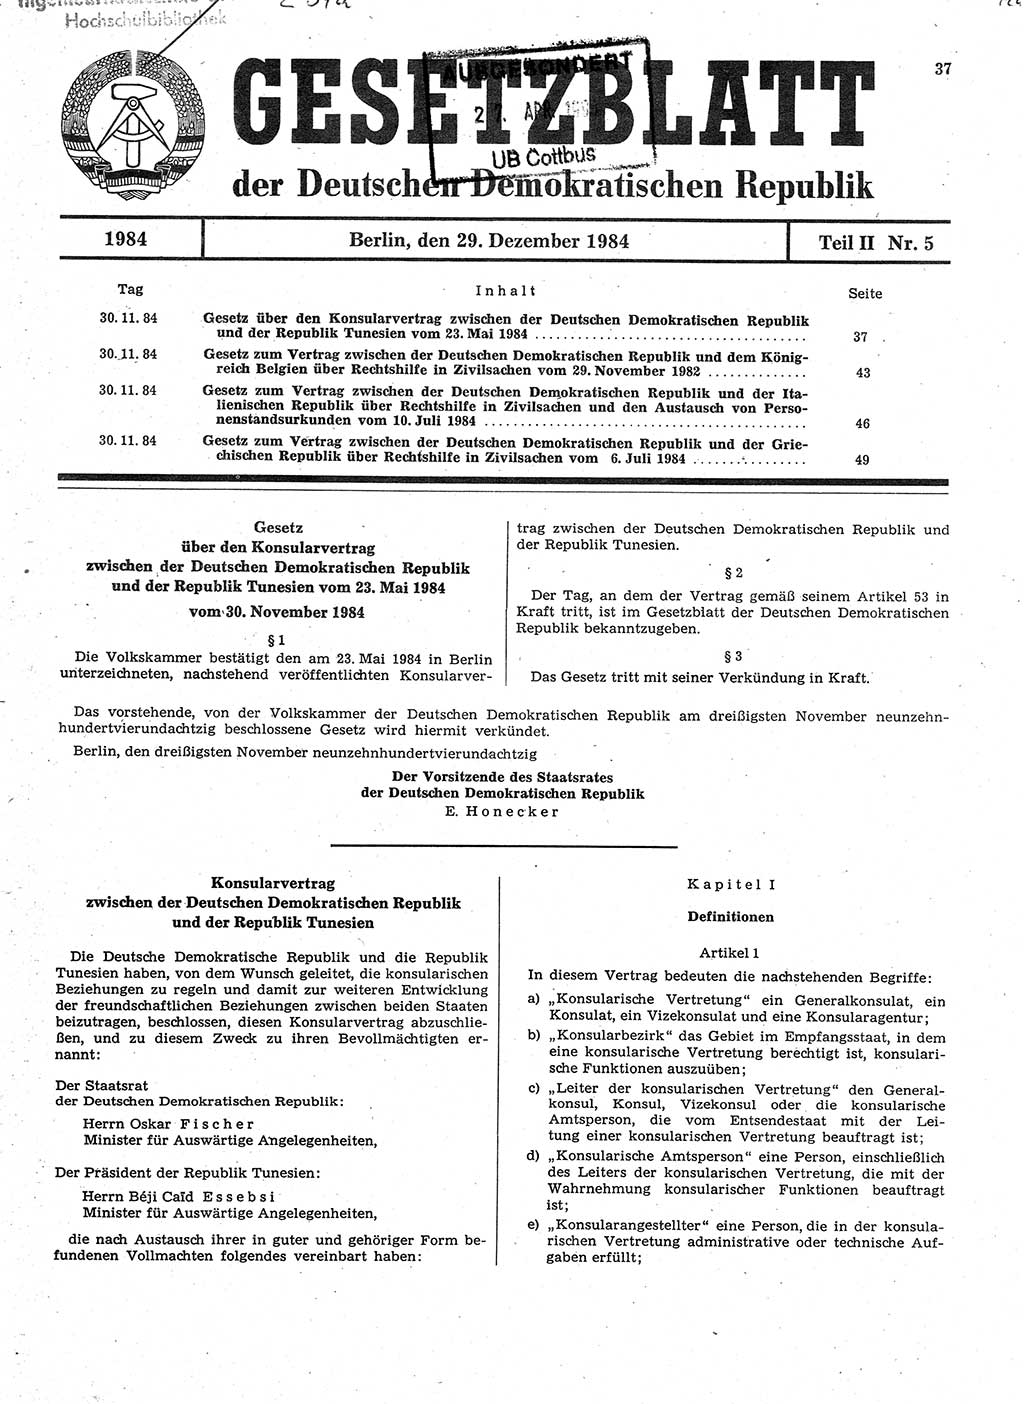 Gesetzblatt (GBl.) der Deutschen Demokratischen Republik (DDR) Teil ⅠⅠ 1984, Seite 37 (GBl. DDR ⅠⅠ 1984, S. 37)